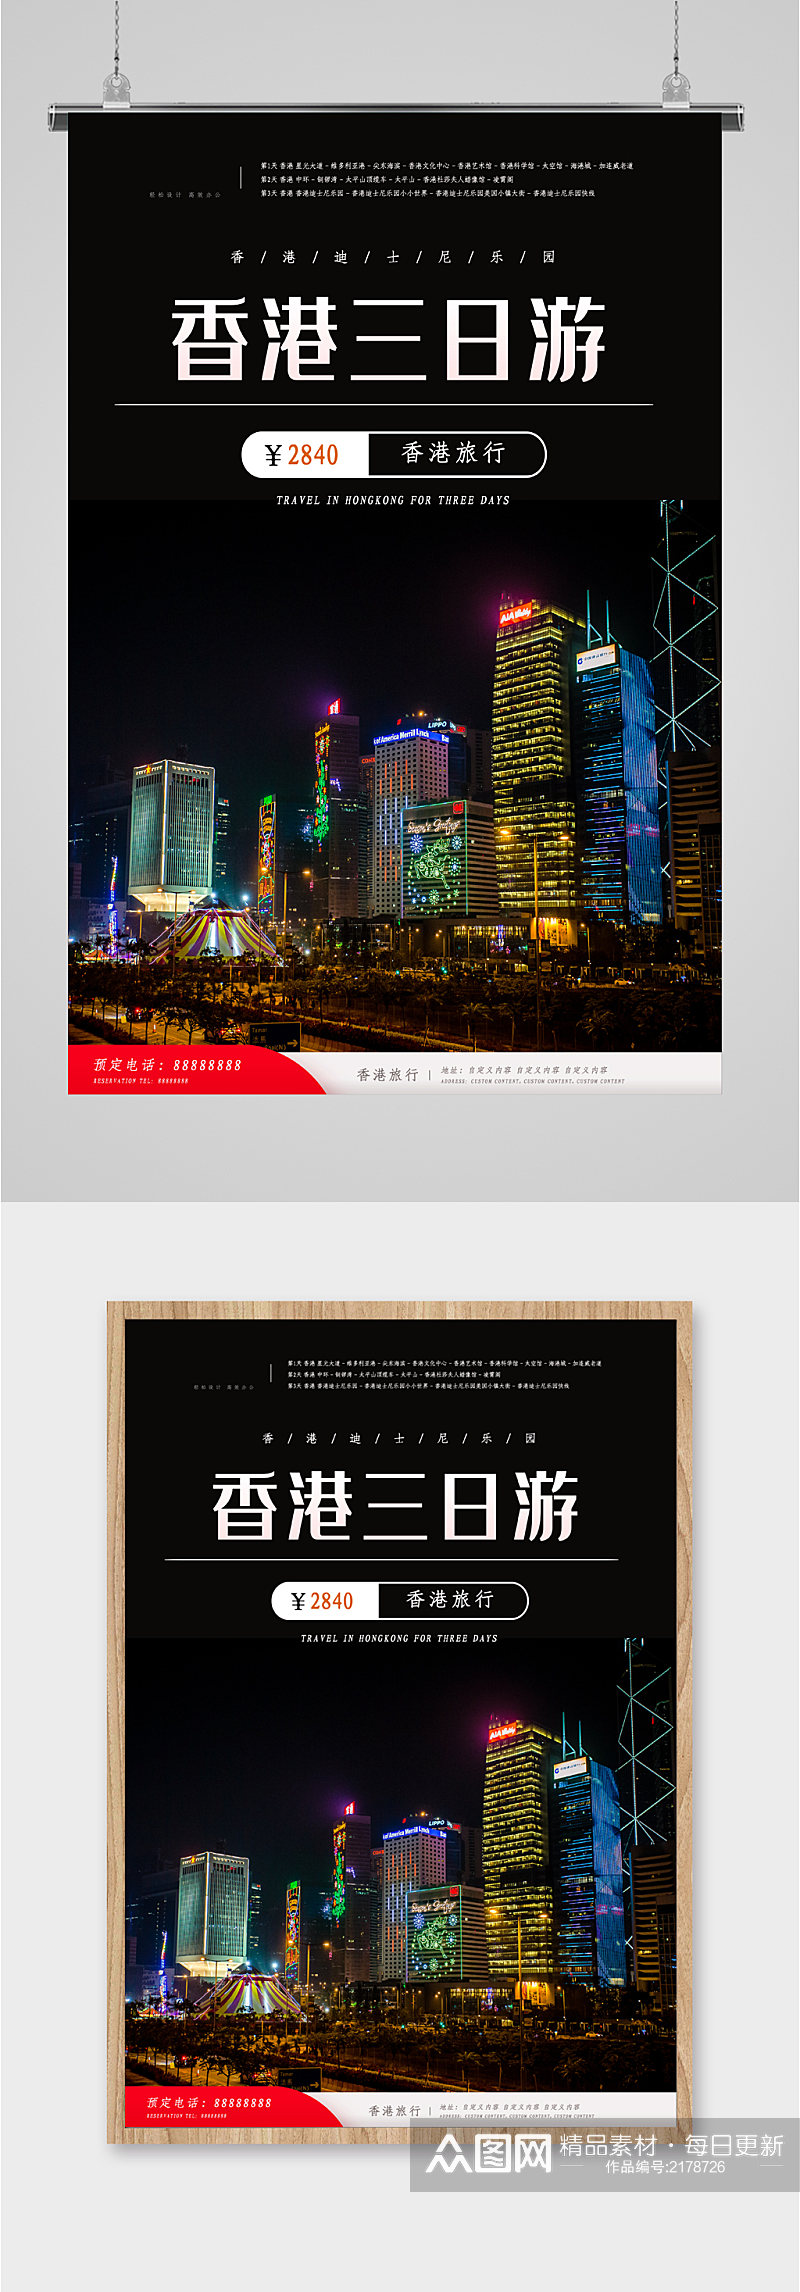 香港三日游旅行海报素材